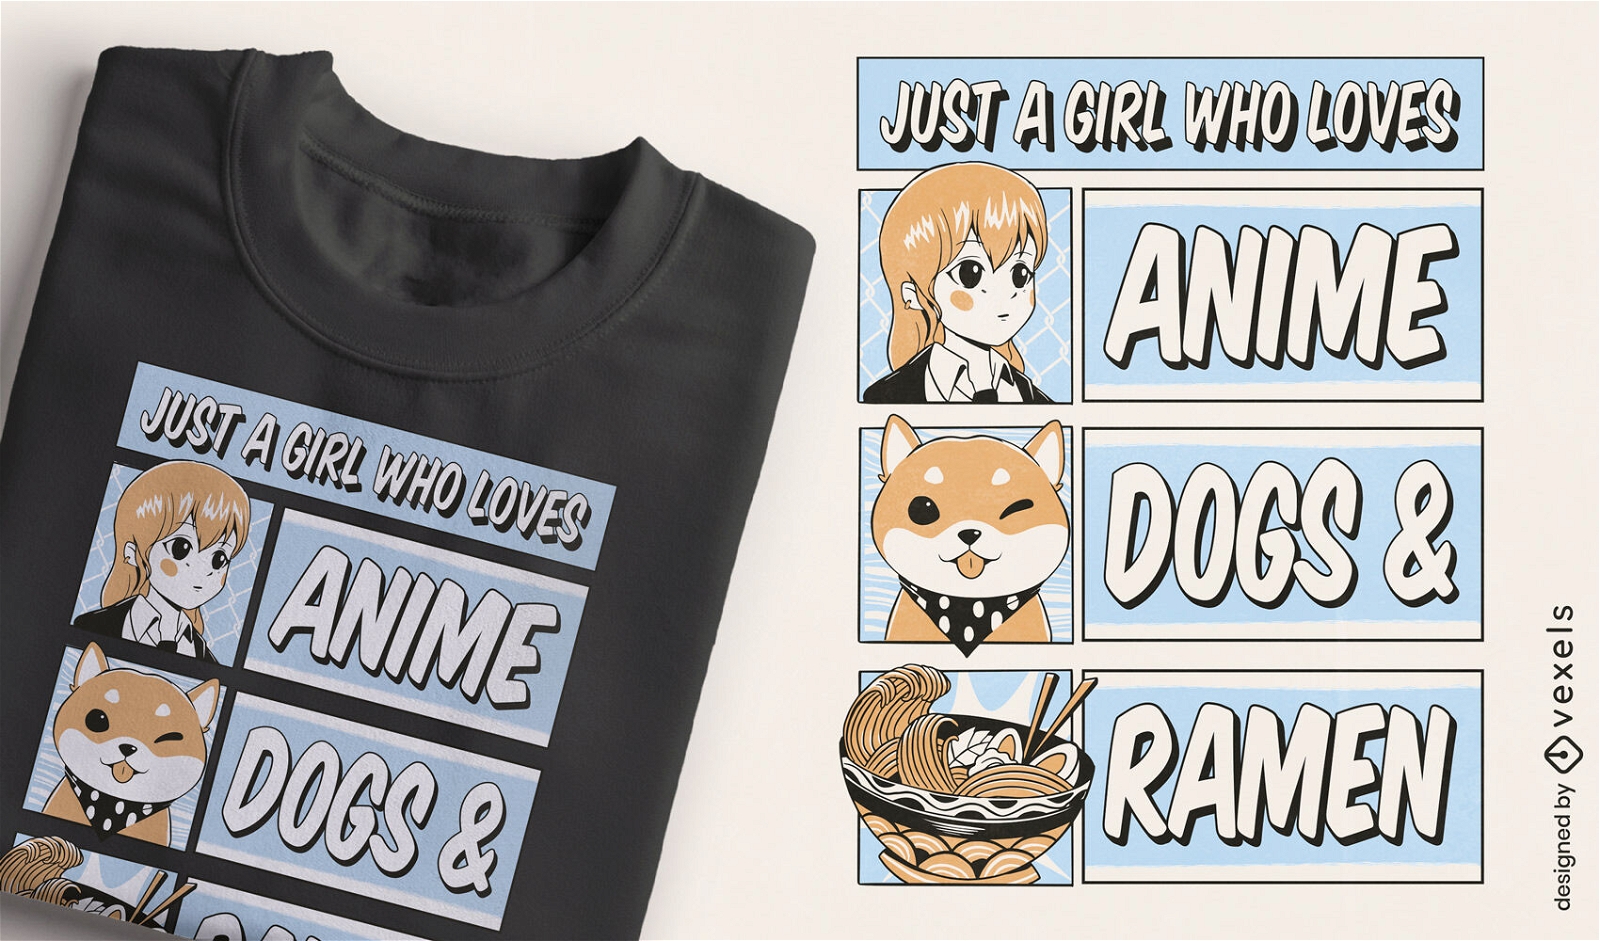 Dise?o de camiseta de anime dogs y ramen.